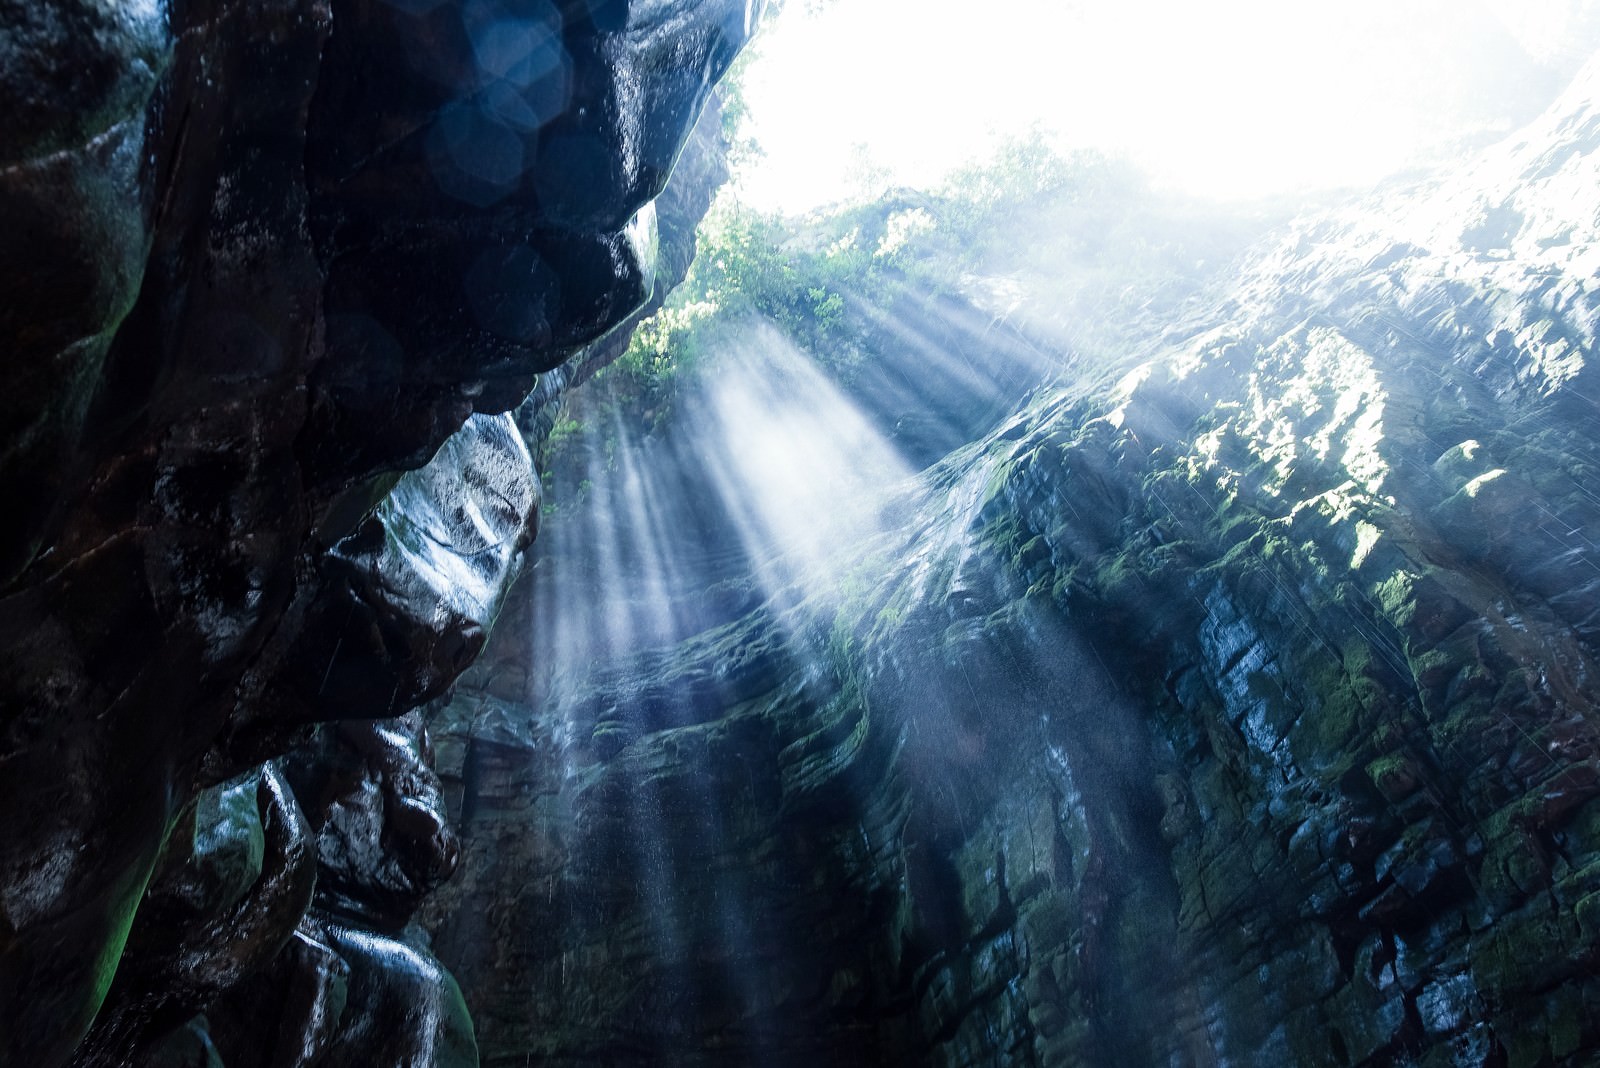 「ベネズエラの洞窟と差し込む光」の写真